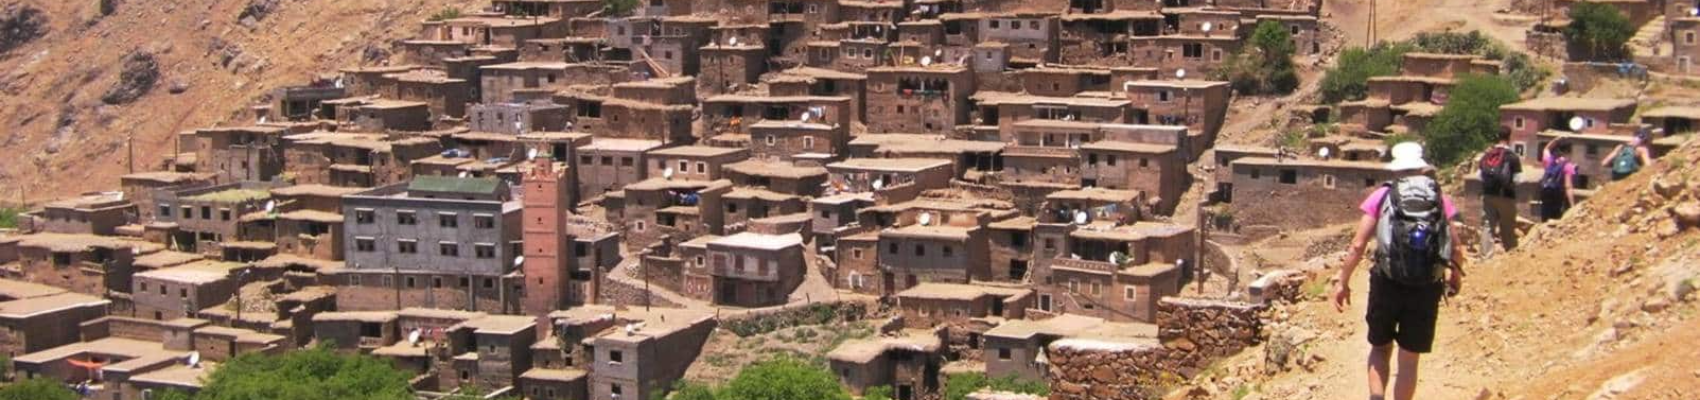 Trekking in Morocco : 4 days Berber Valley Trek